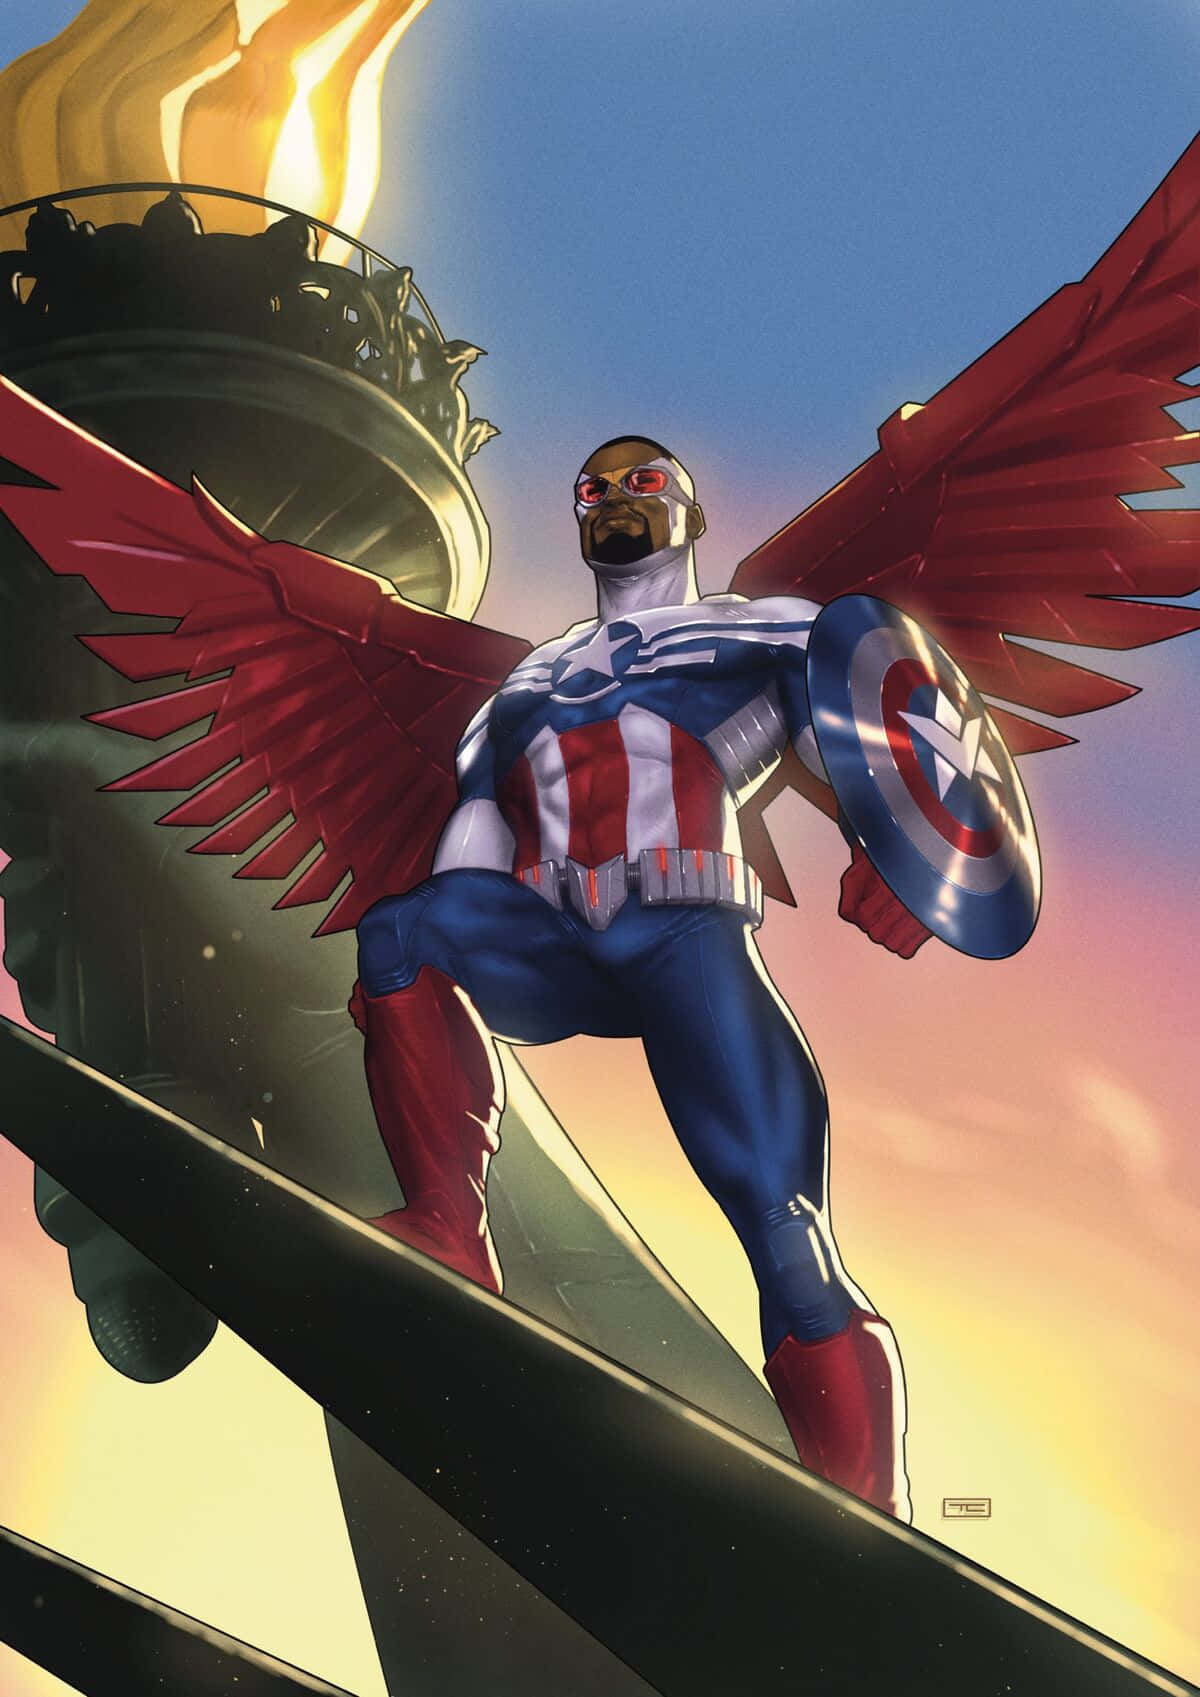 Det ikoniske Marvel Logo med Falcon fra Avengers er afbildet med stolthed. Wallpaper